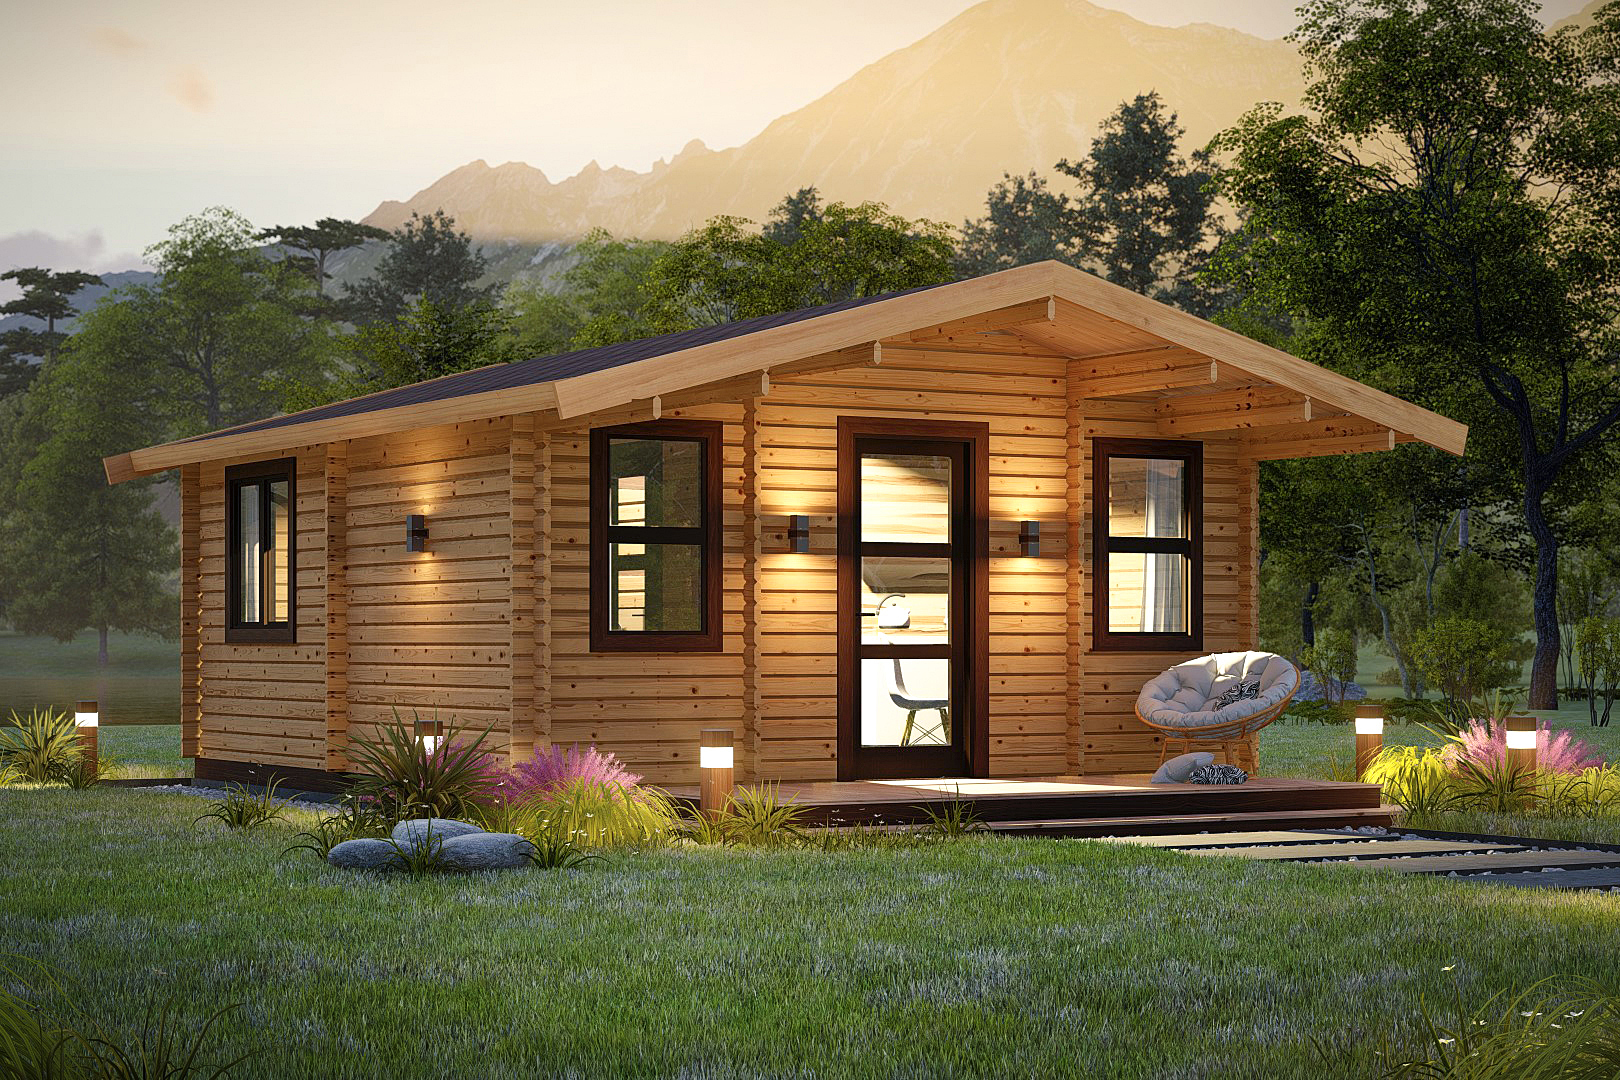 Фото дачный домик из бруса: как построить садовый брусовой коттедж эконом класса, небольшие деревянные постройки для дачи